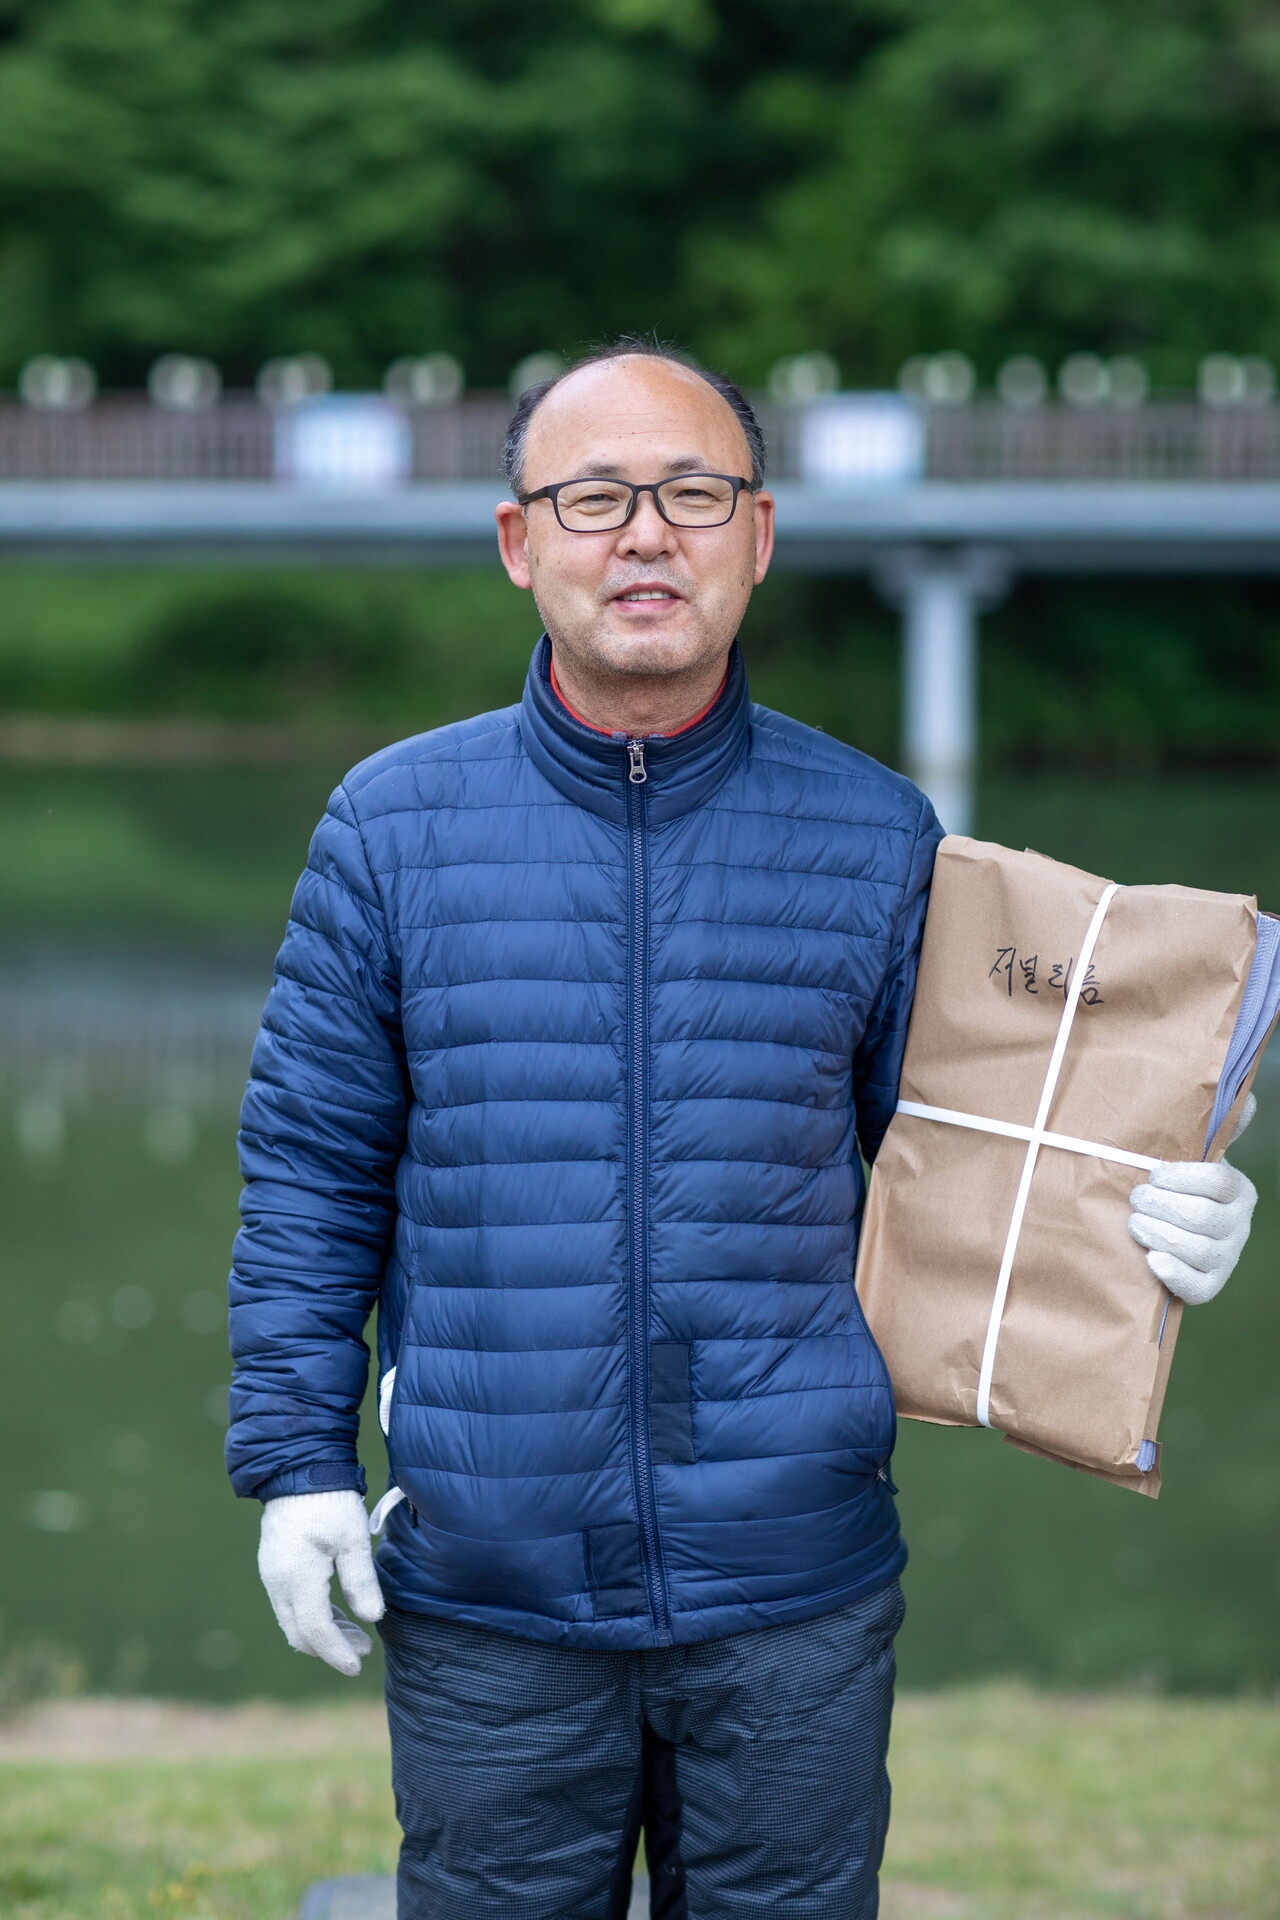 김덕용 씨는 스무 살이던 1984년부터 지금까지 37년간 신문을 배달하고 있다. ⓒ 박시몬